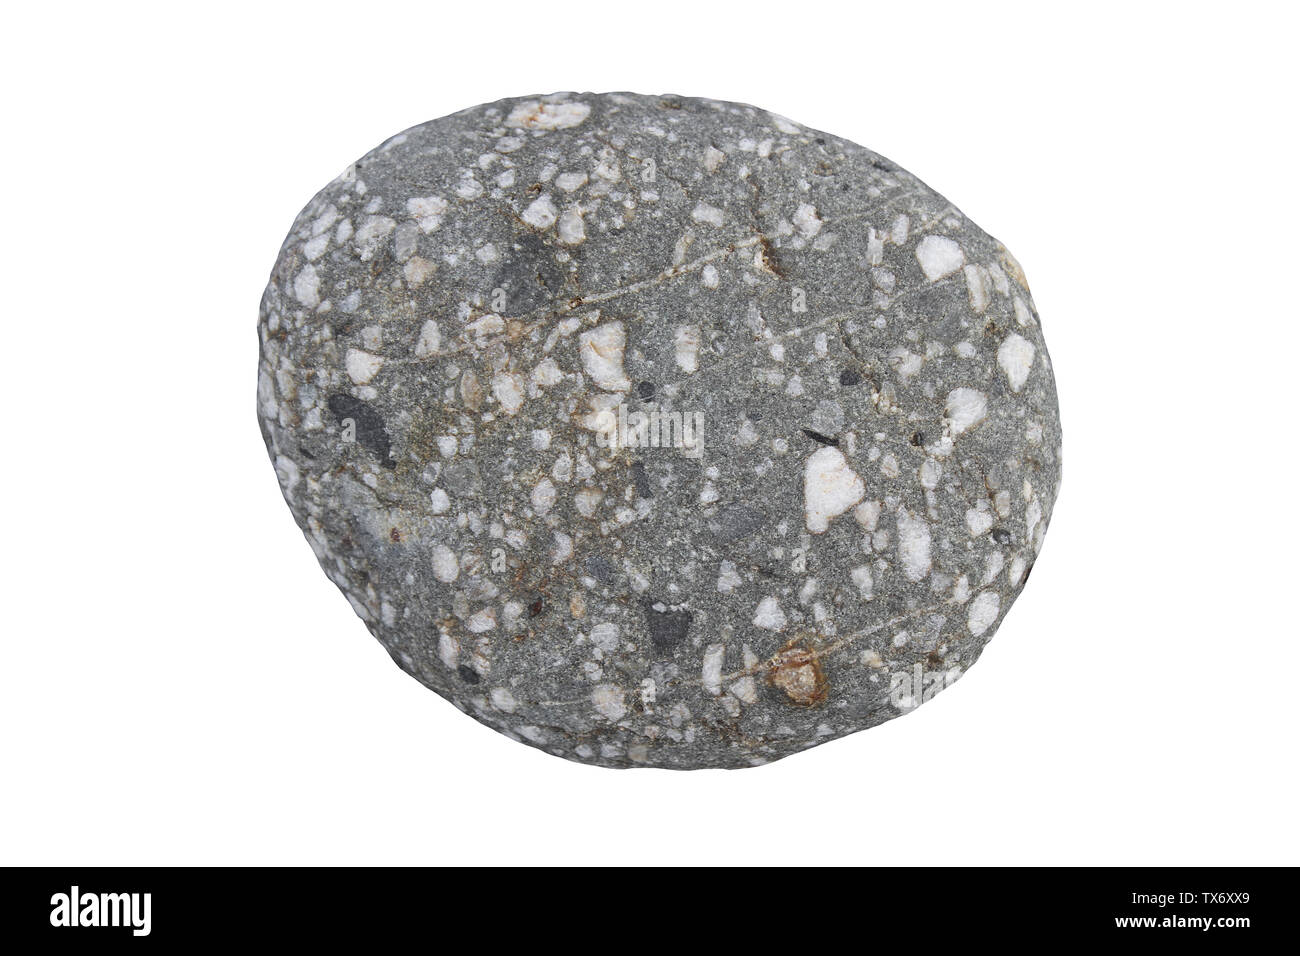 Sedimentäre Lithic Konglomerat Rock Muster - Schlecht sortiert, die Fragmente der Dunklen mudstone und weißen Quarz/Quarzit Stockfoto